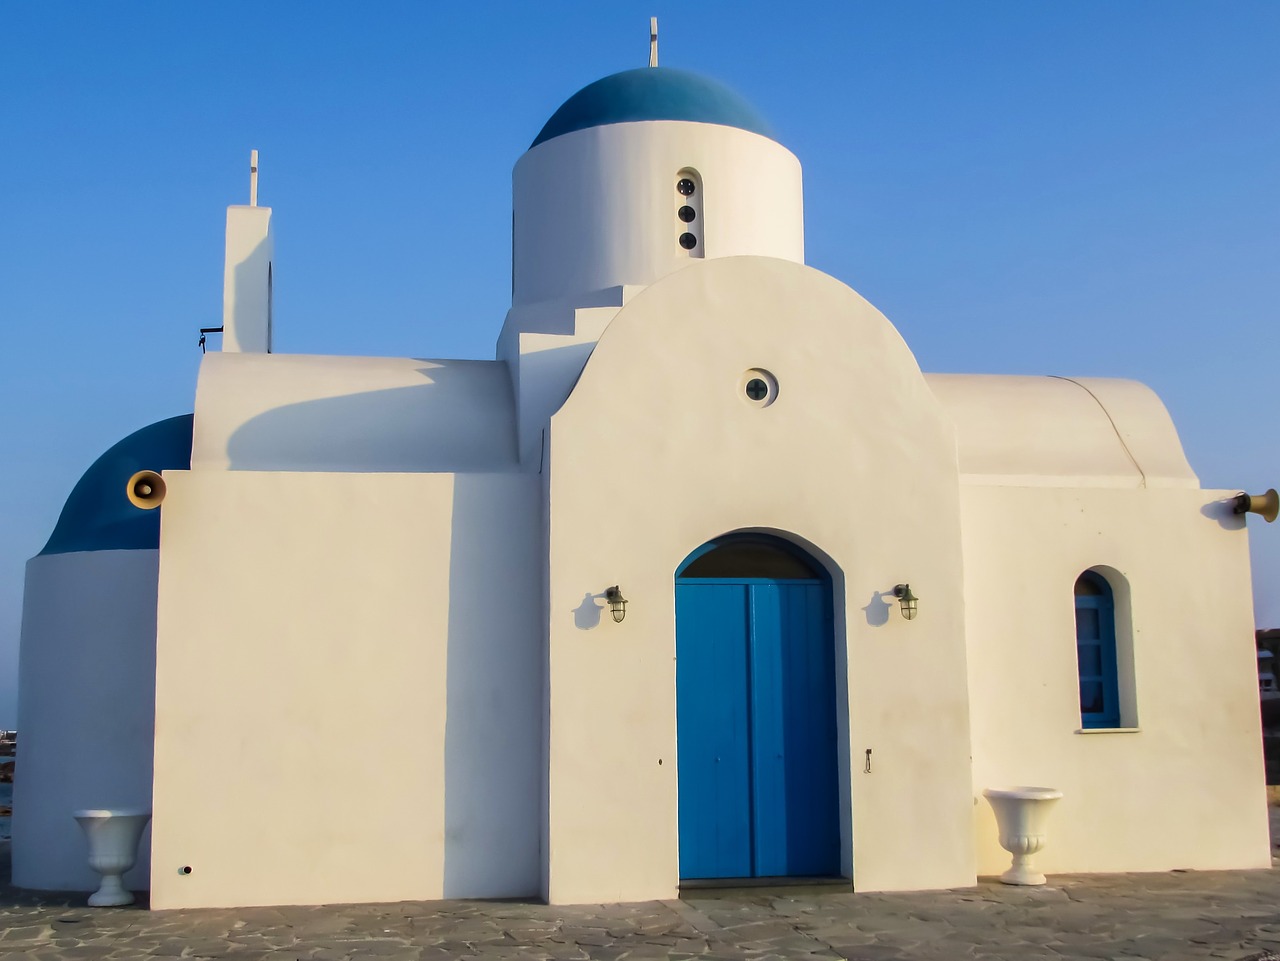 Bažnyčia, Balta, Mėlynas, Vasara, Kipras, Religija, Architektūra, Turizmas, Protaras, Ayios Nikolaos